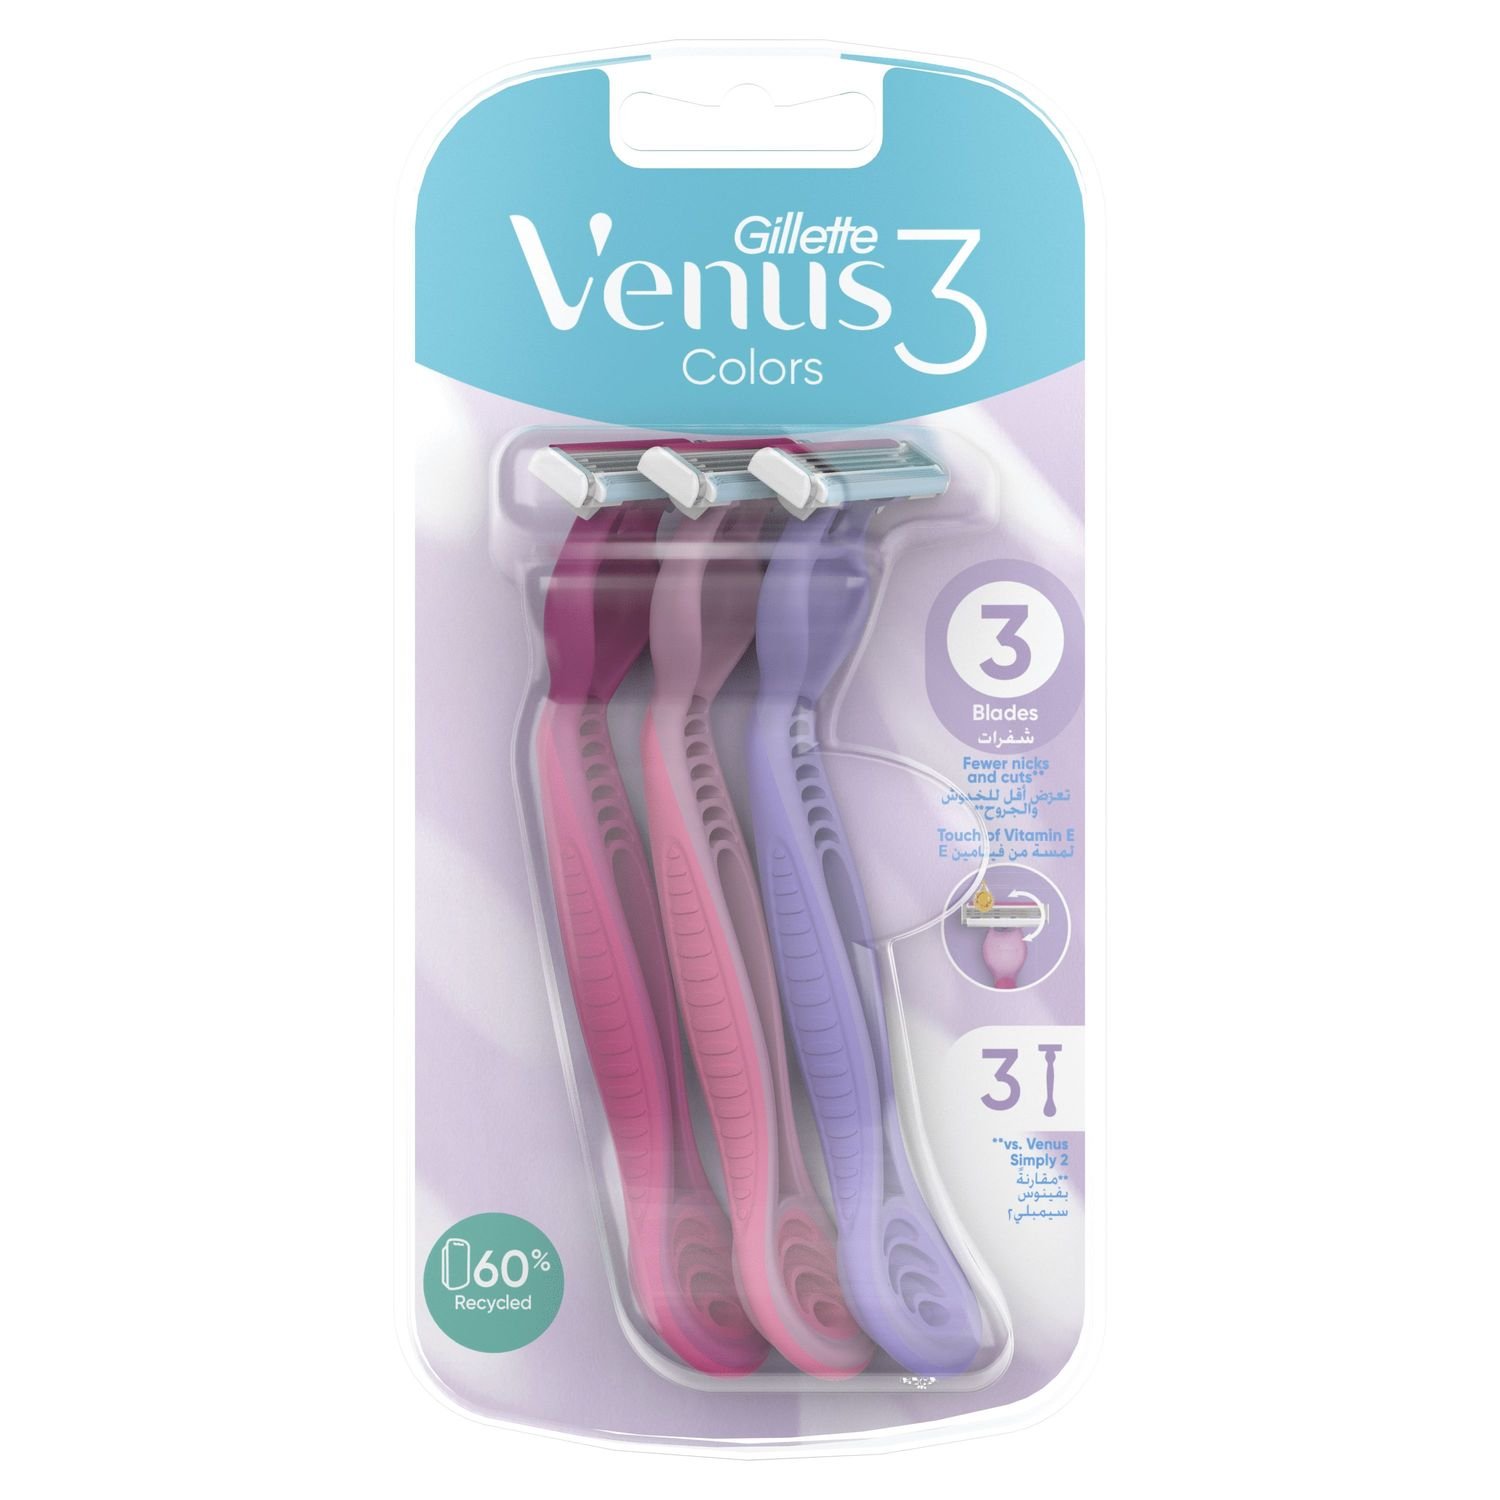 Одноразові станки для гоління Gillette Venus 3 Colors, 3 шт. - фото 2